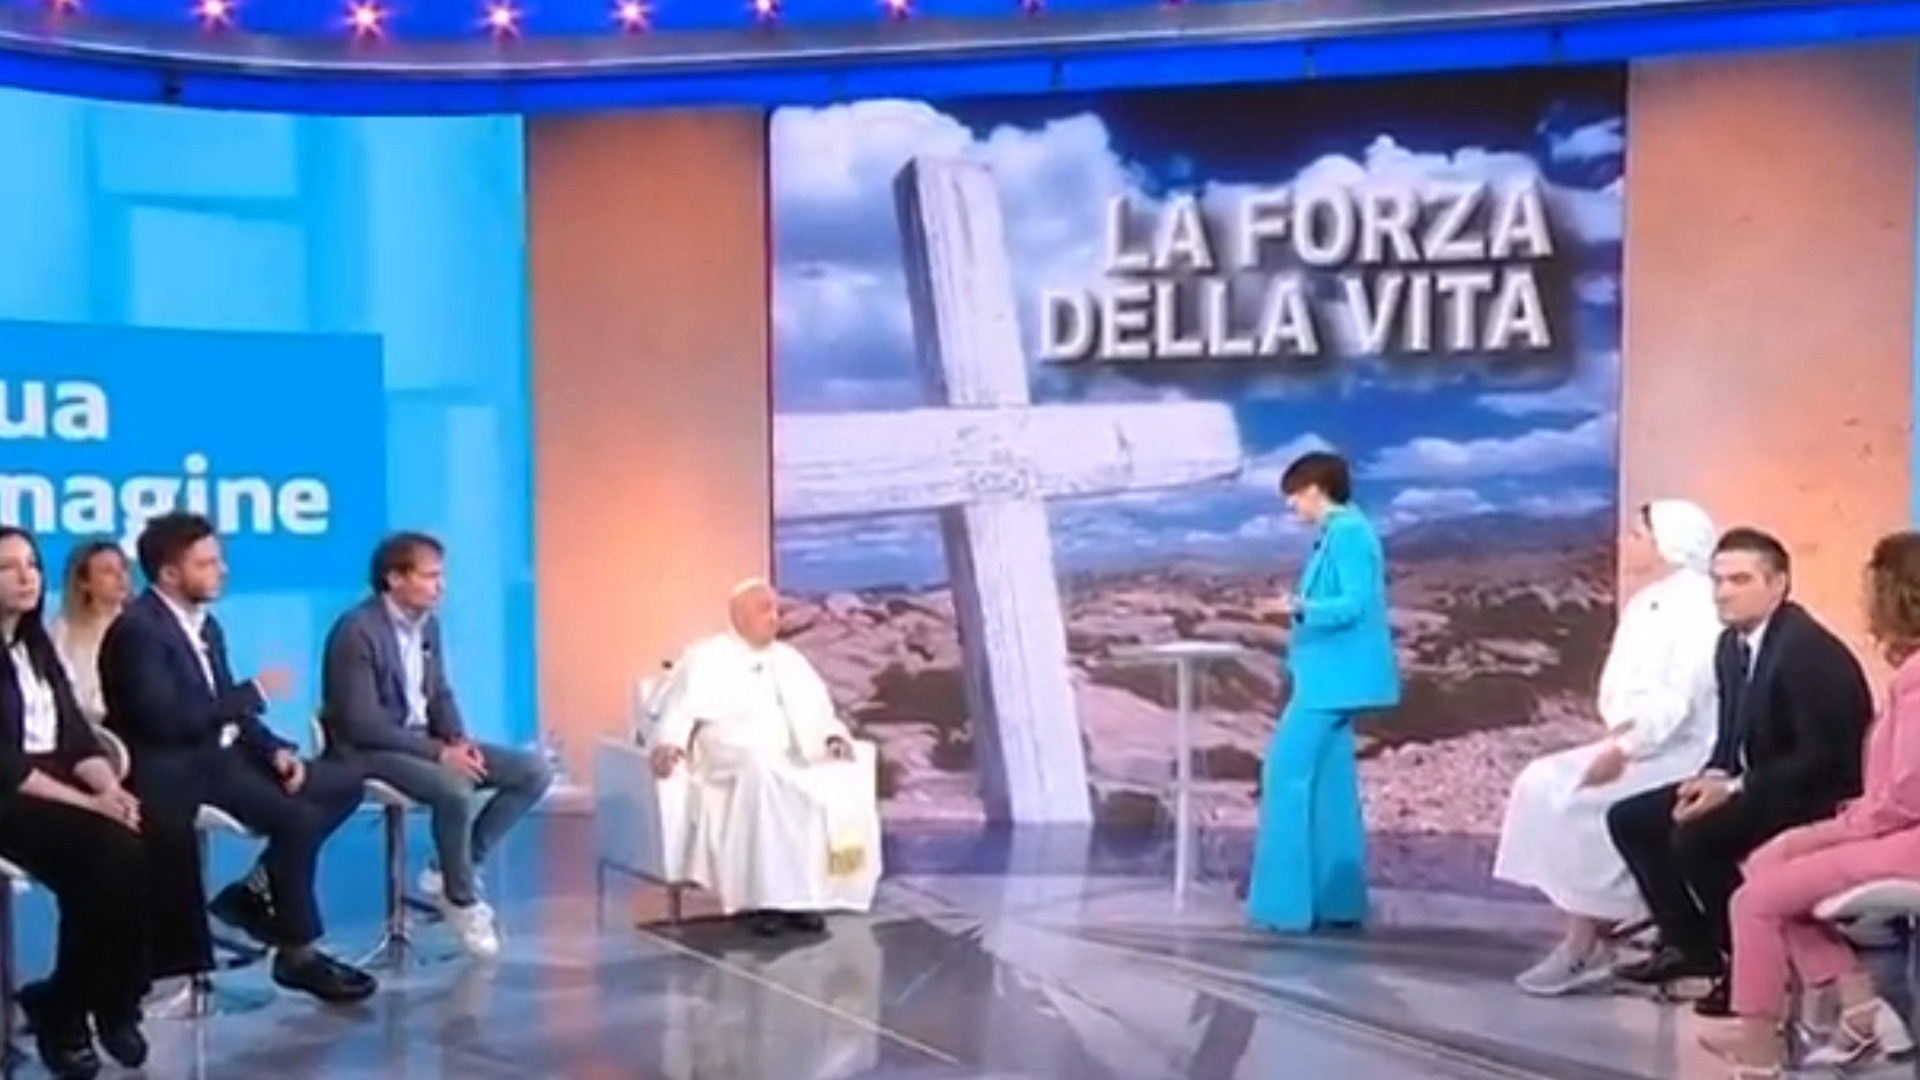 Por primera vez, el papa Francisco asistió a un estudio de TV para una entrevista a un programa italiano